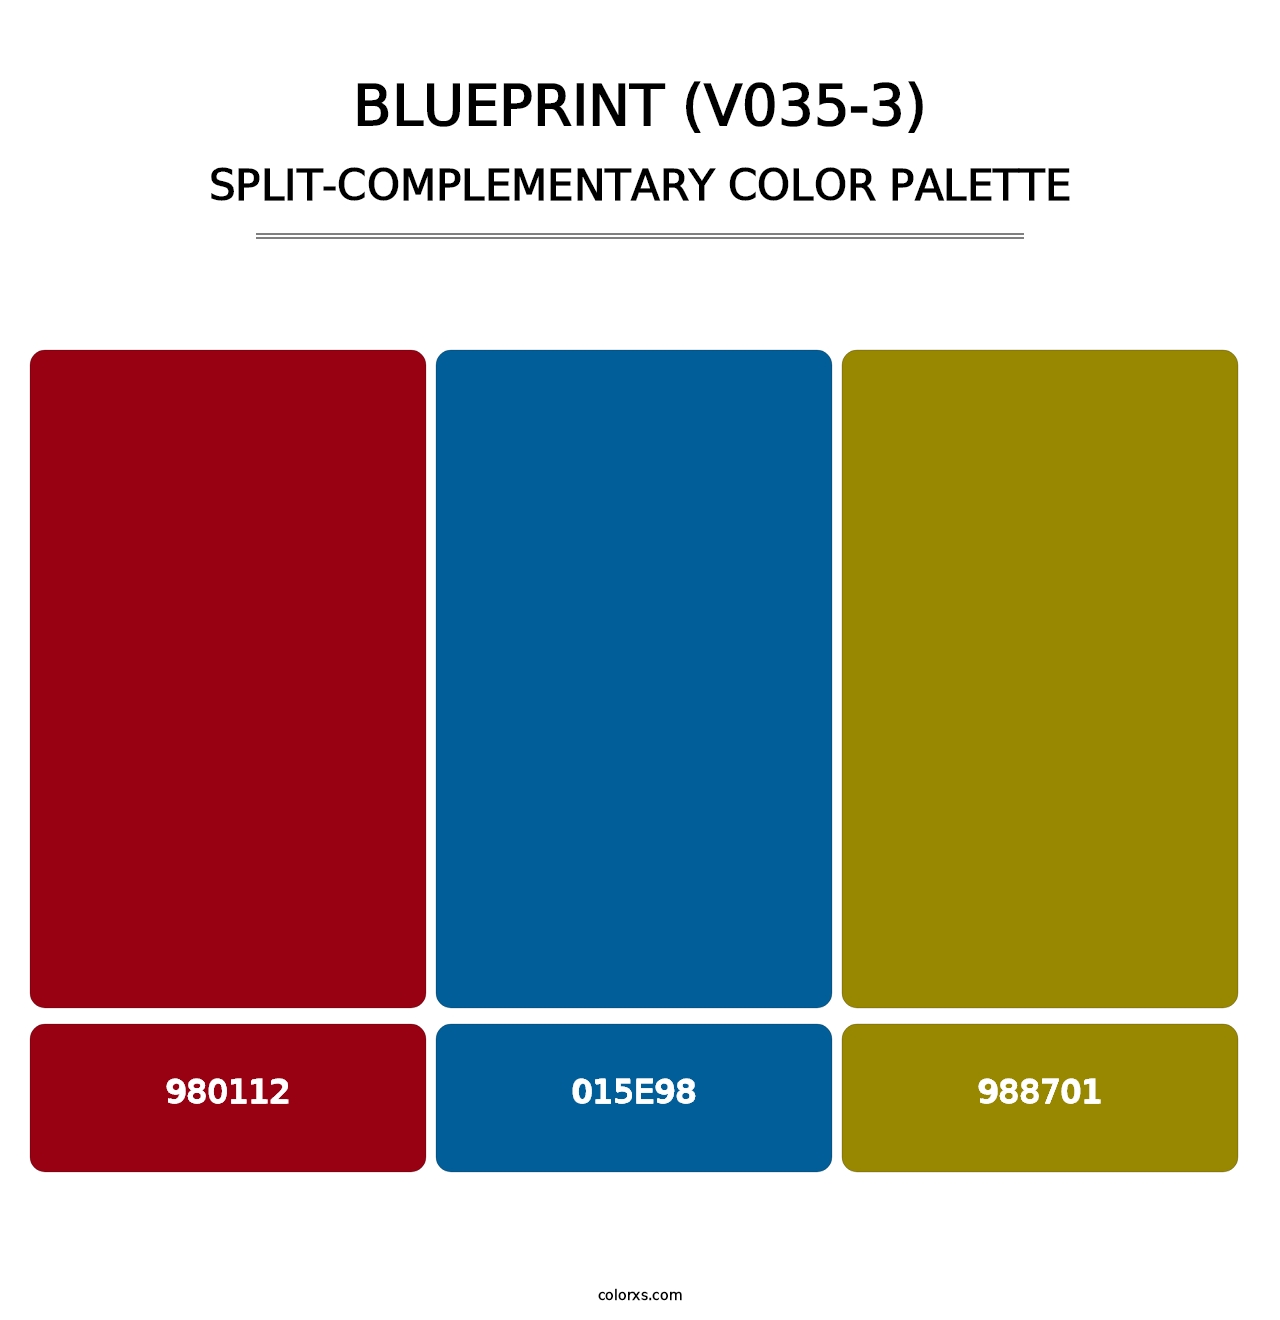 Blueprint (V035-3) - Split-Complementary Color Palette